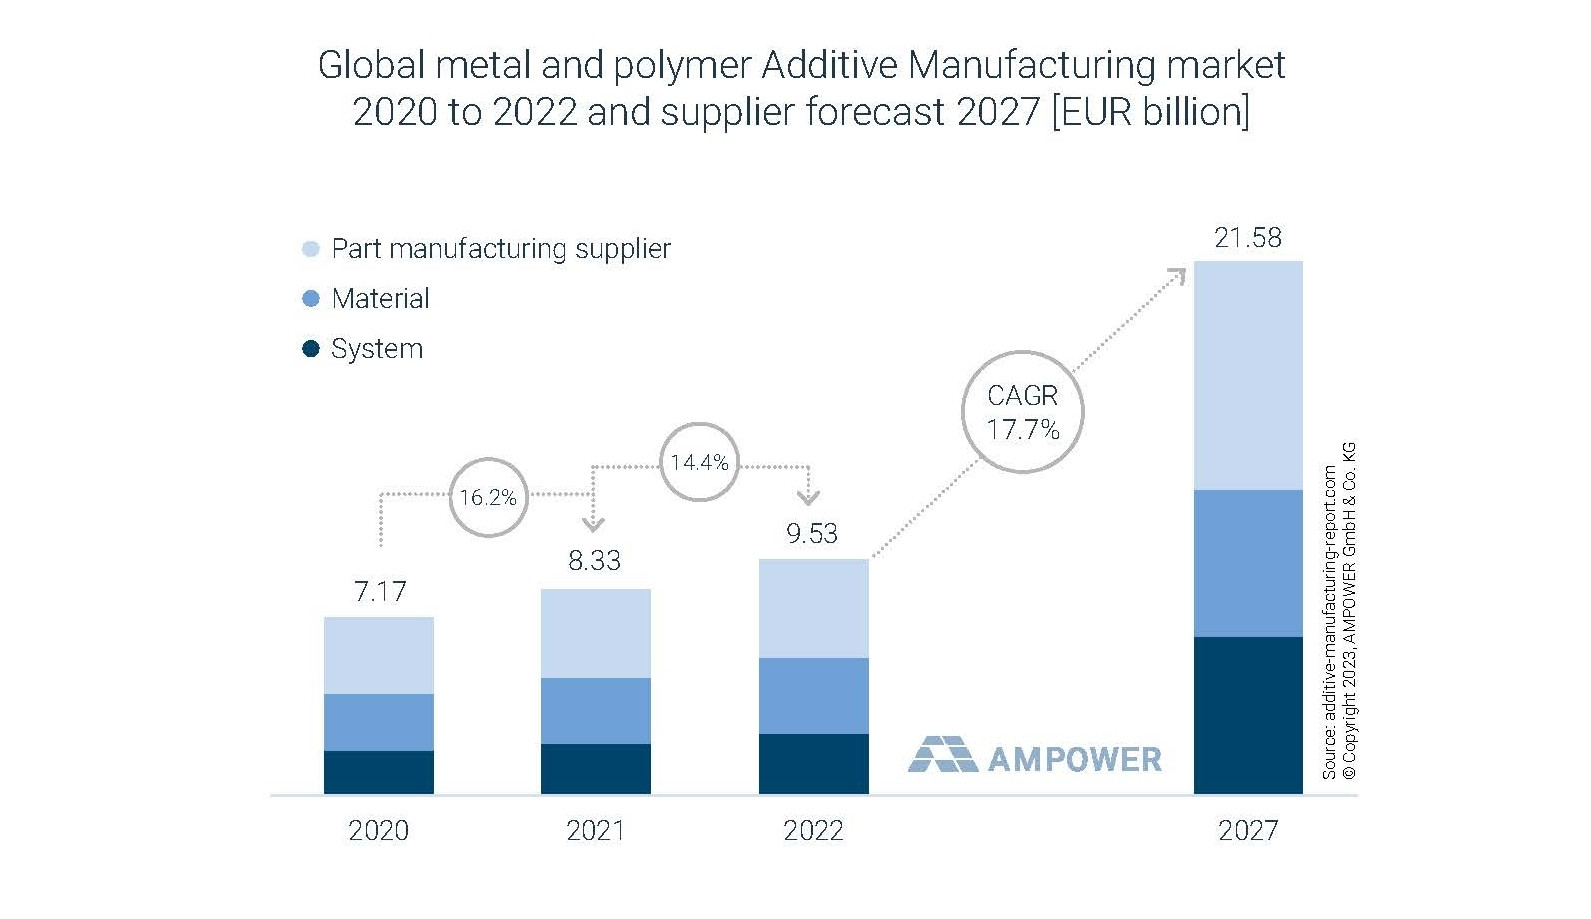 Der globale Markt für Additive Fertigung mit Metallen und Polymeren von 2020 bis 2022 und die Schätzung für 2027 in Mrd. EUR zeigt ein anhaltend zweistelliges Wachstum.